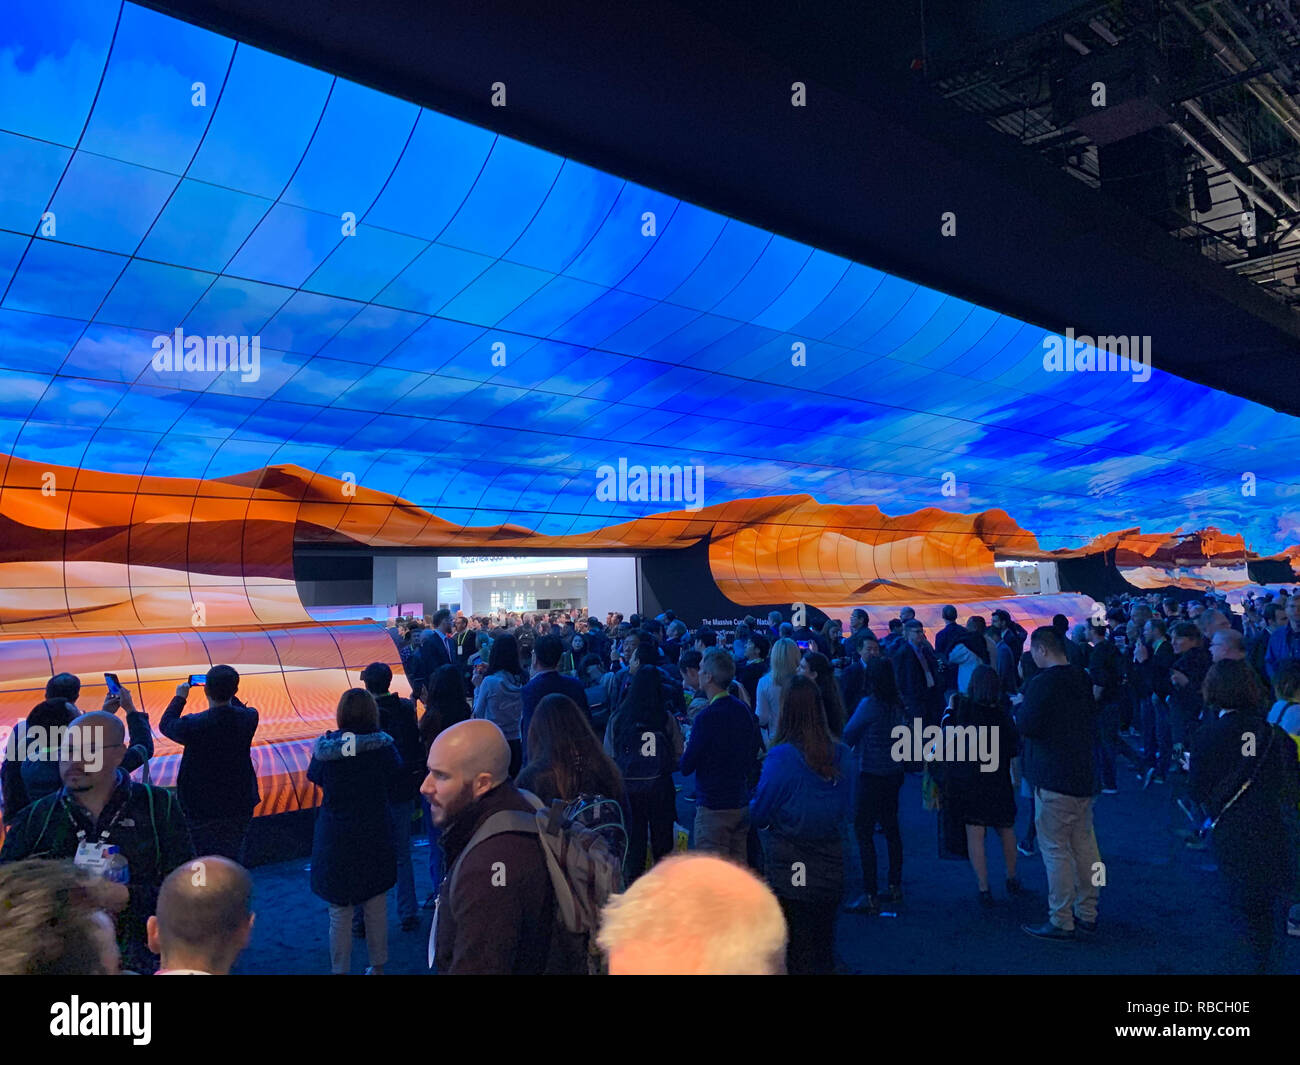 Un mur d'écrans qui marque l'entrée de l'entreprise coréenne LG's stand lors de la Consumer Electronics Show (CES) à Las Vegas. Banque D'Images